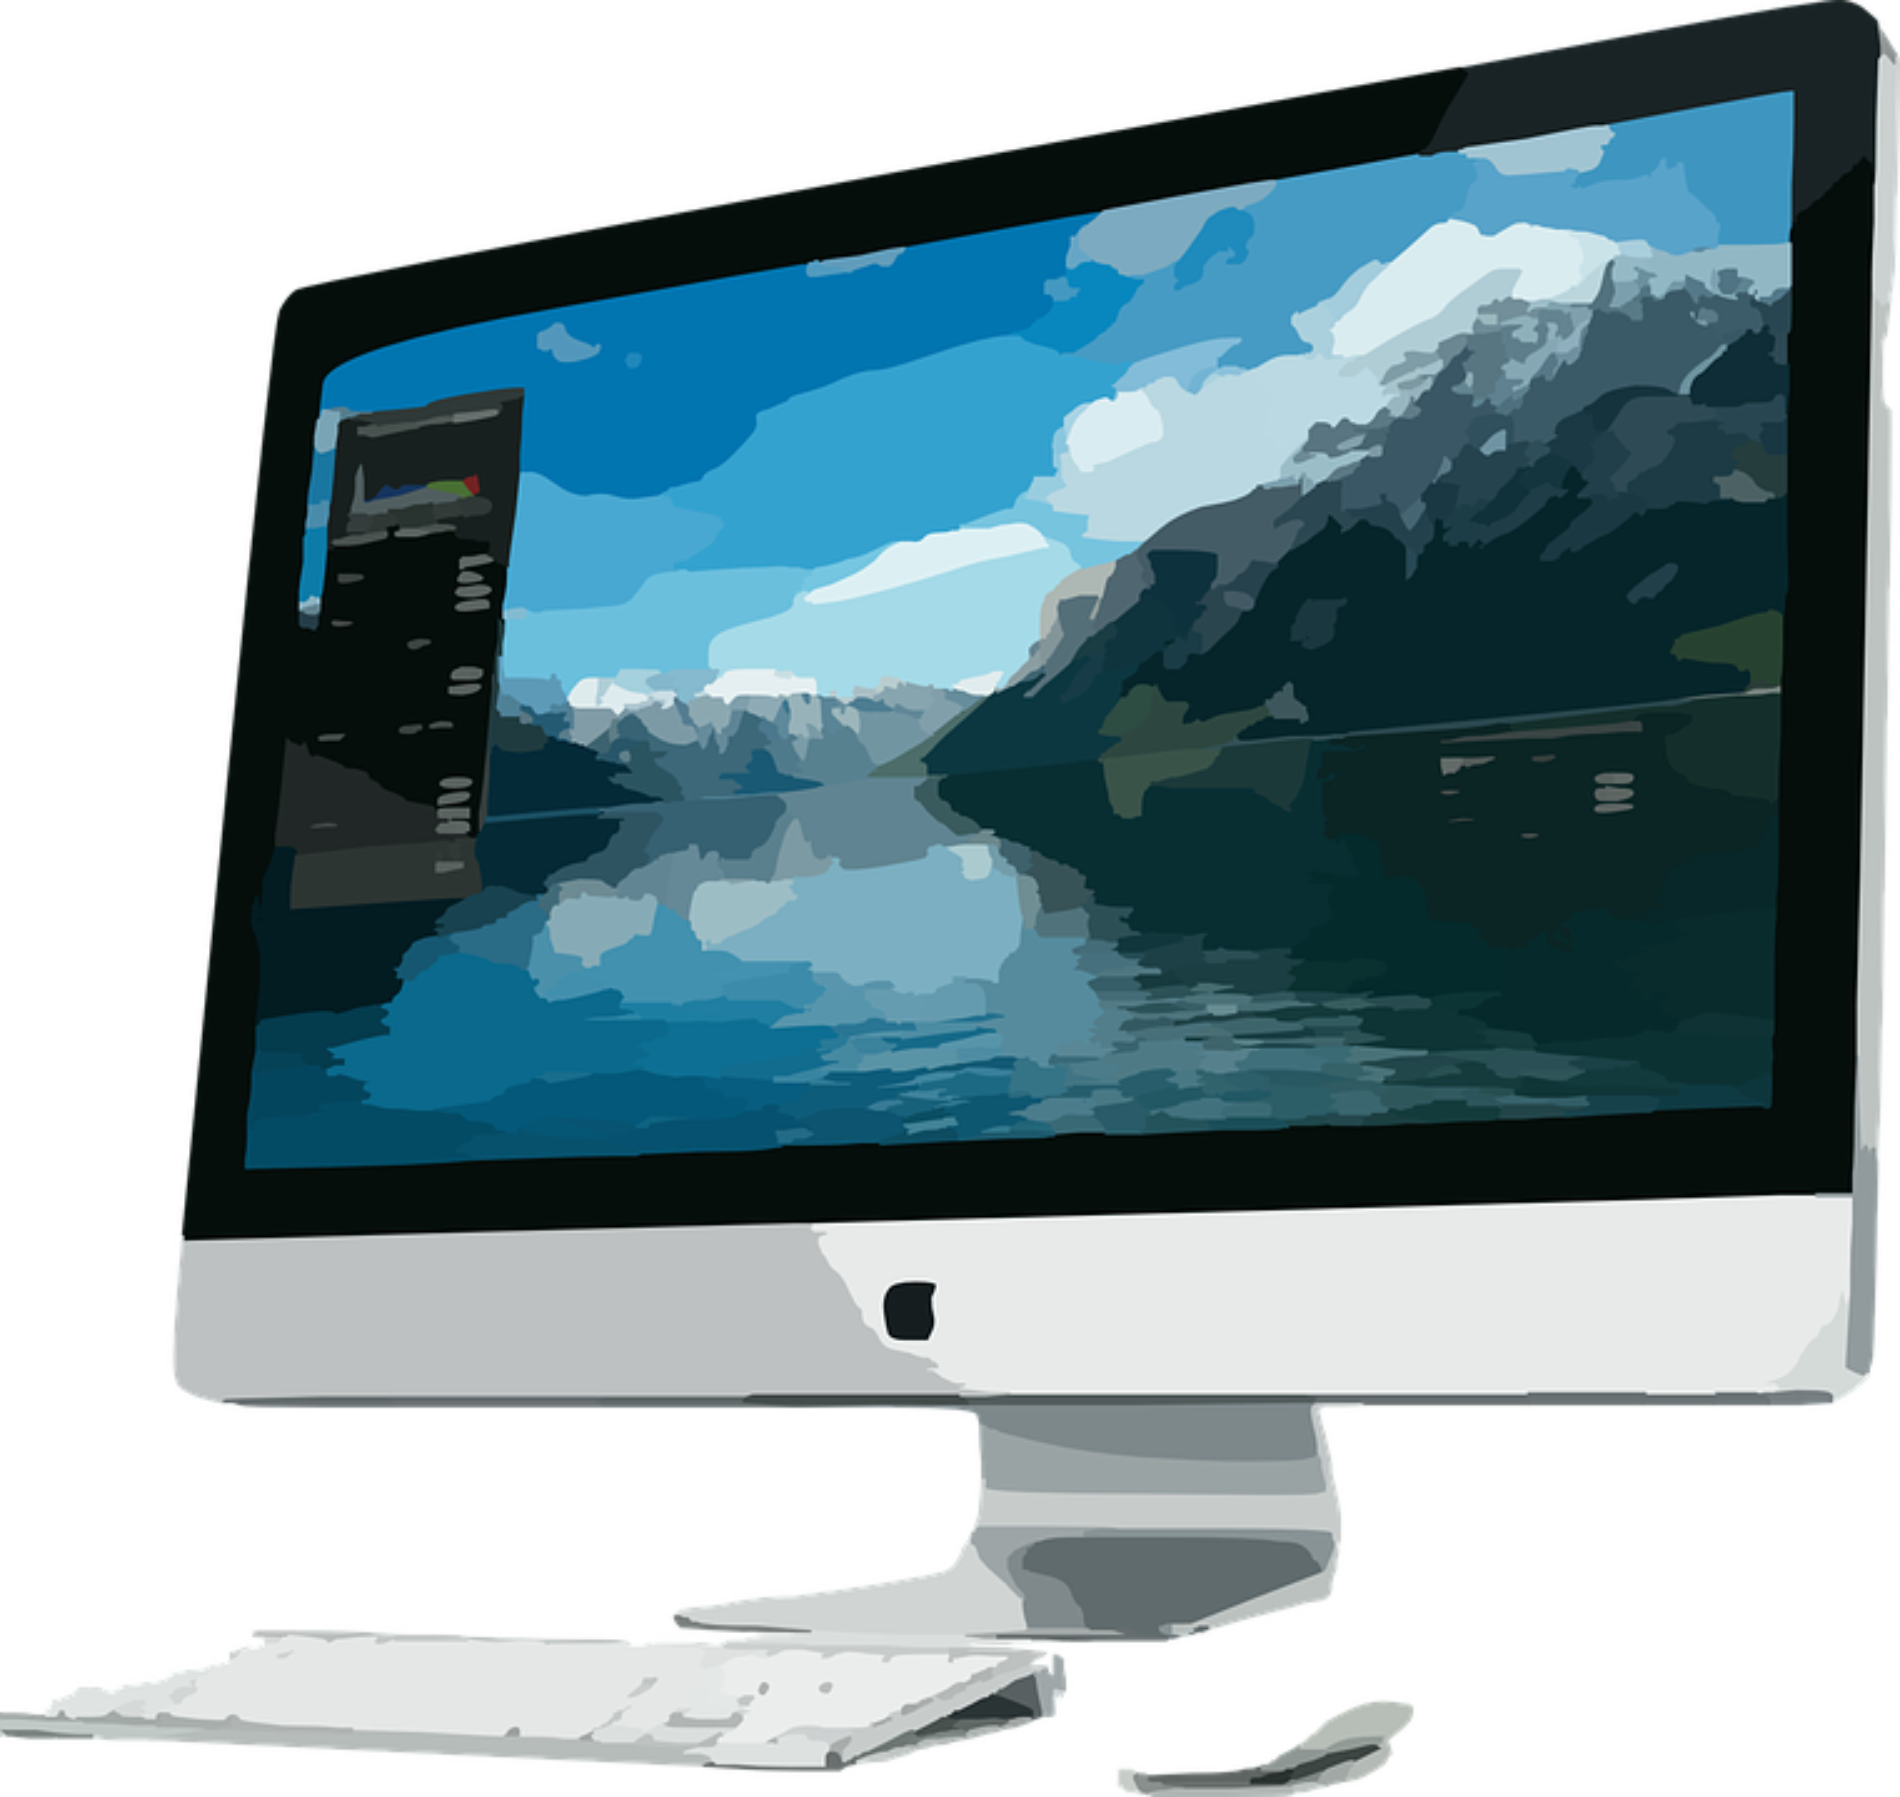 Nuevo iMac Pro disponible mañana 14 de diciembre